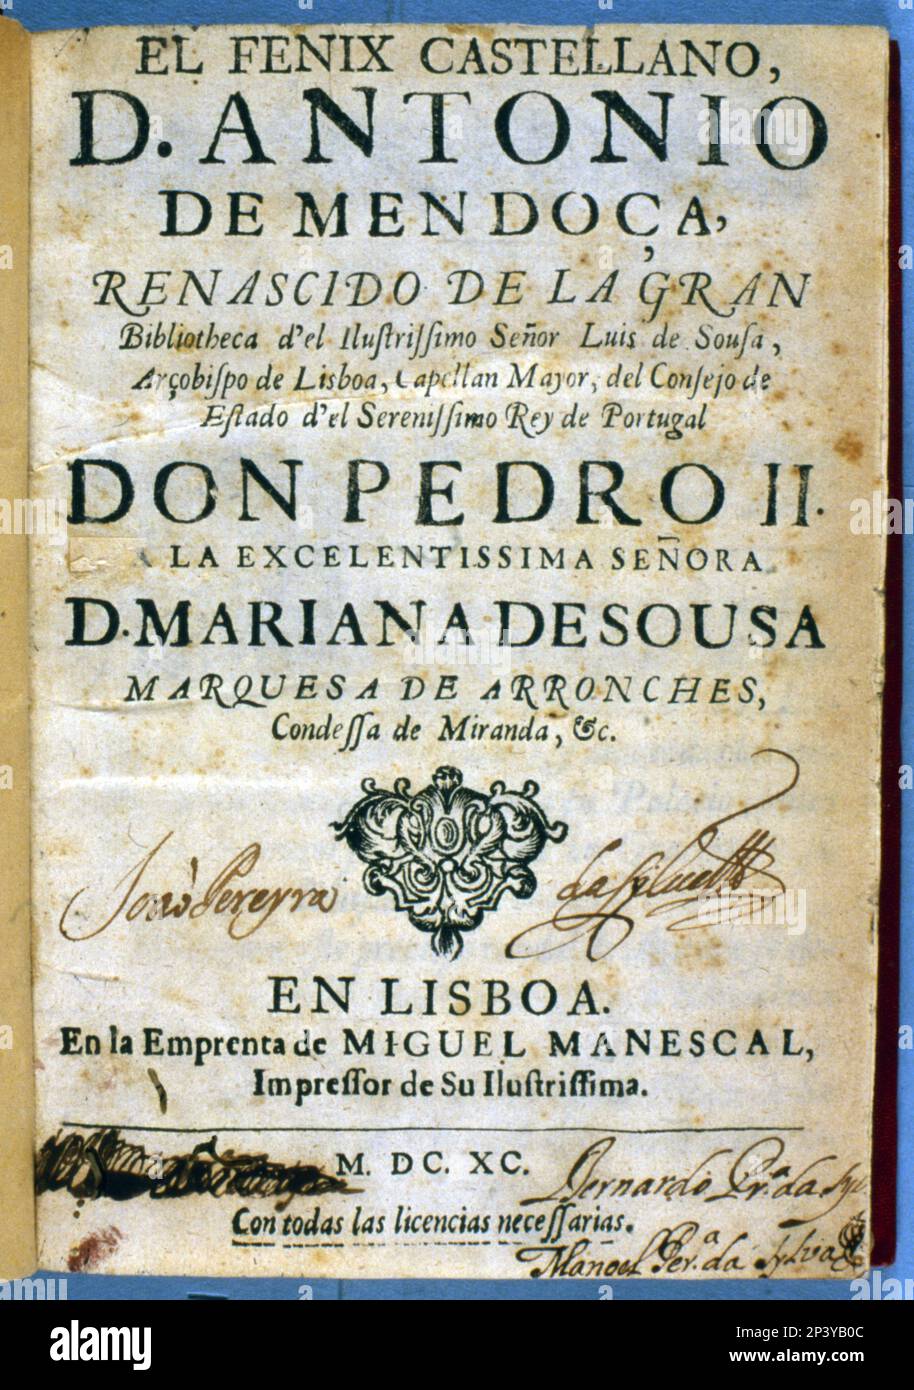 Cover of the work 'El fenix castellano' (The Castilian phoenix) by Antonio Hurtado de Mendoza. Printed in Lisbon by Miguel Manescal, 1690. Stock Photo